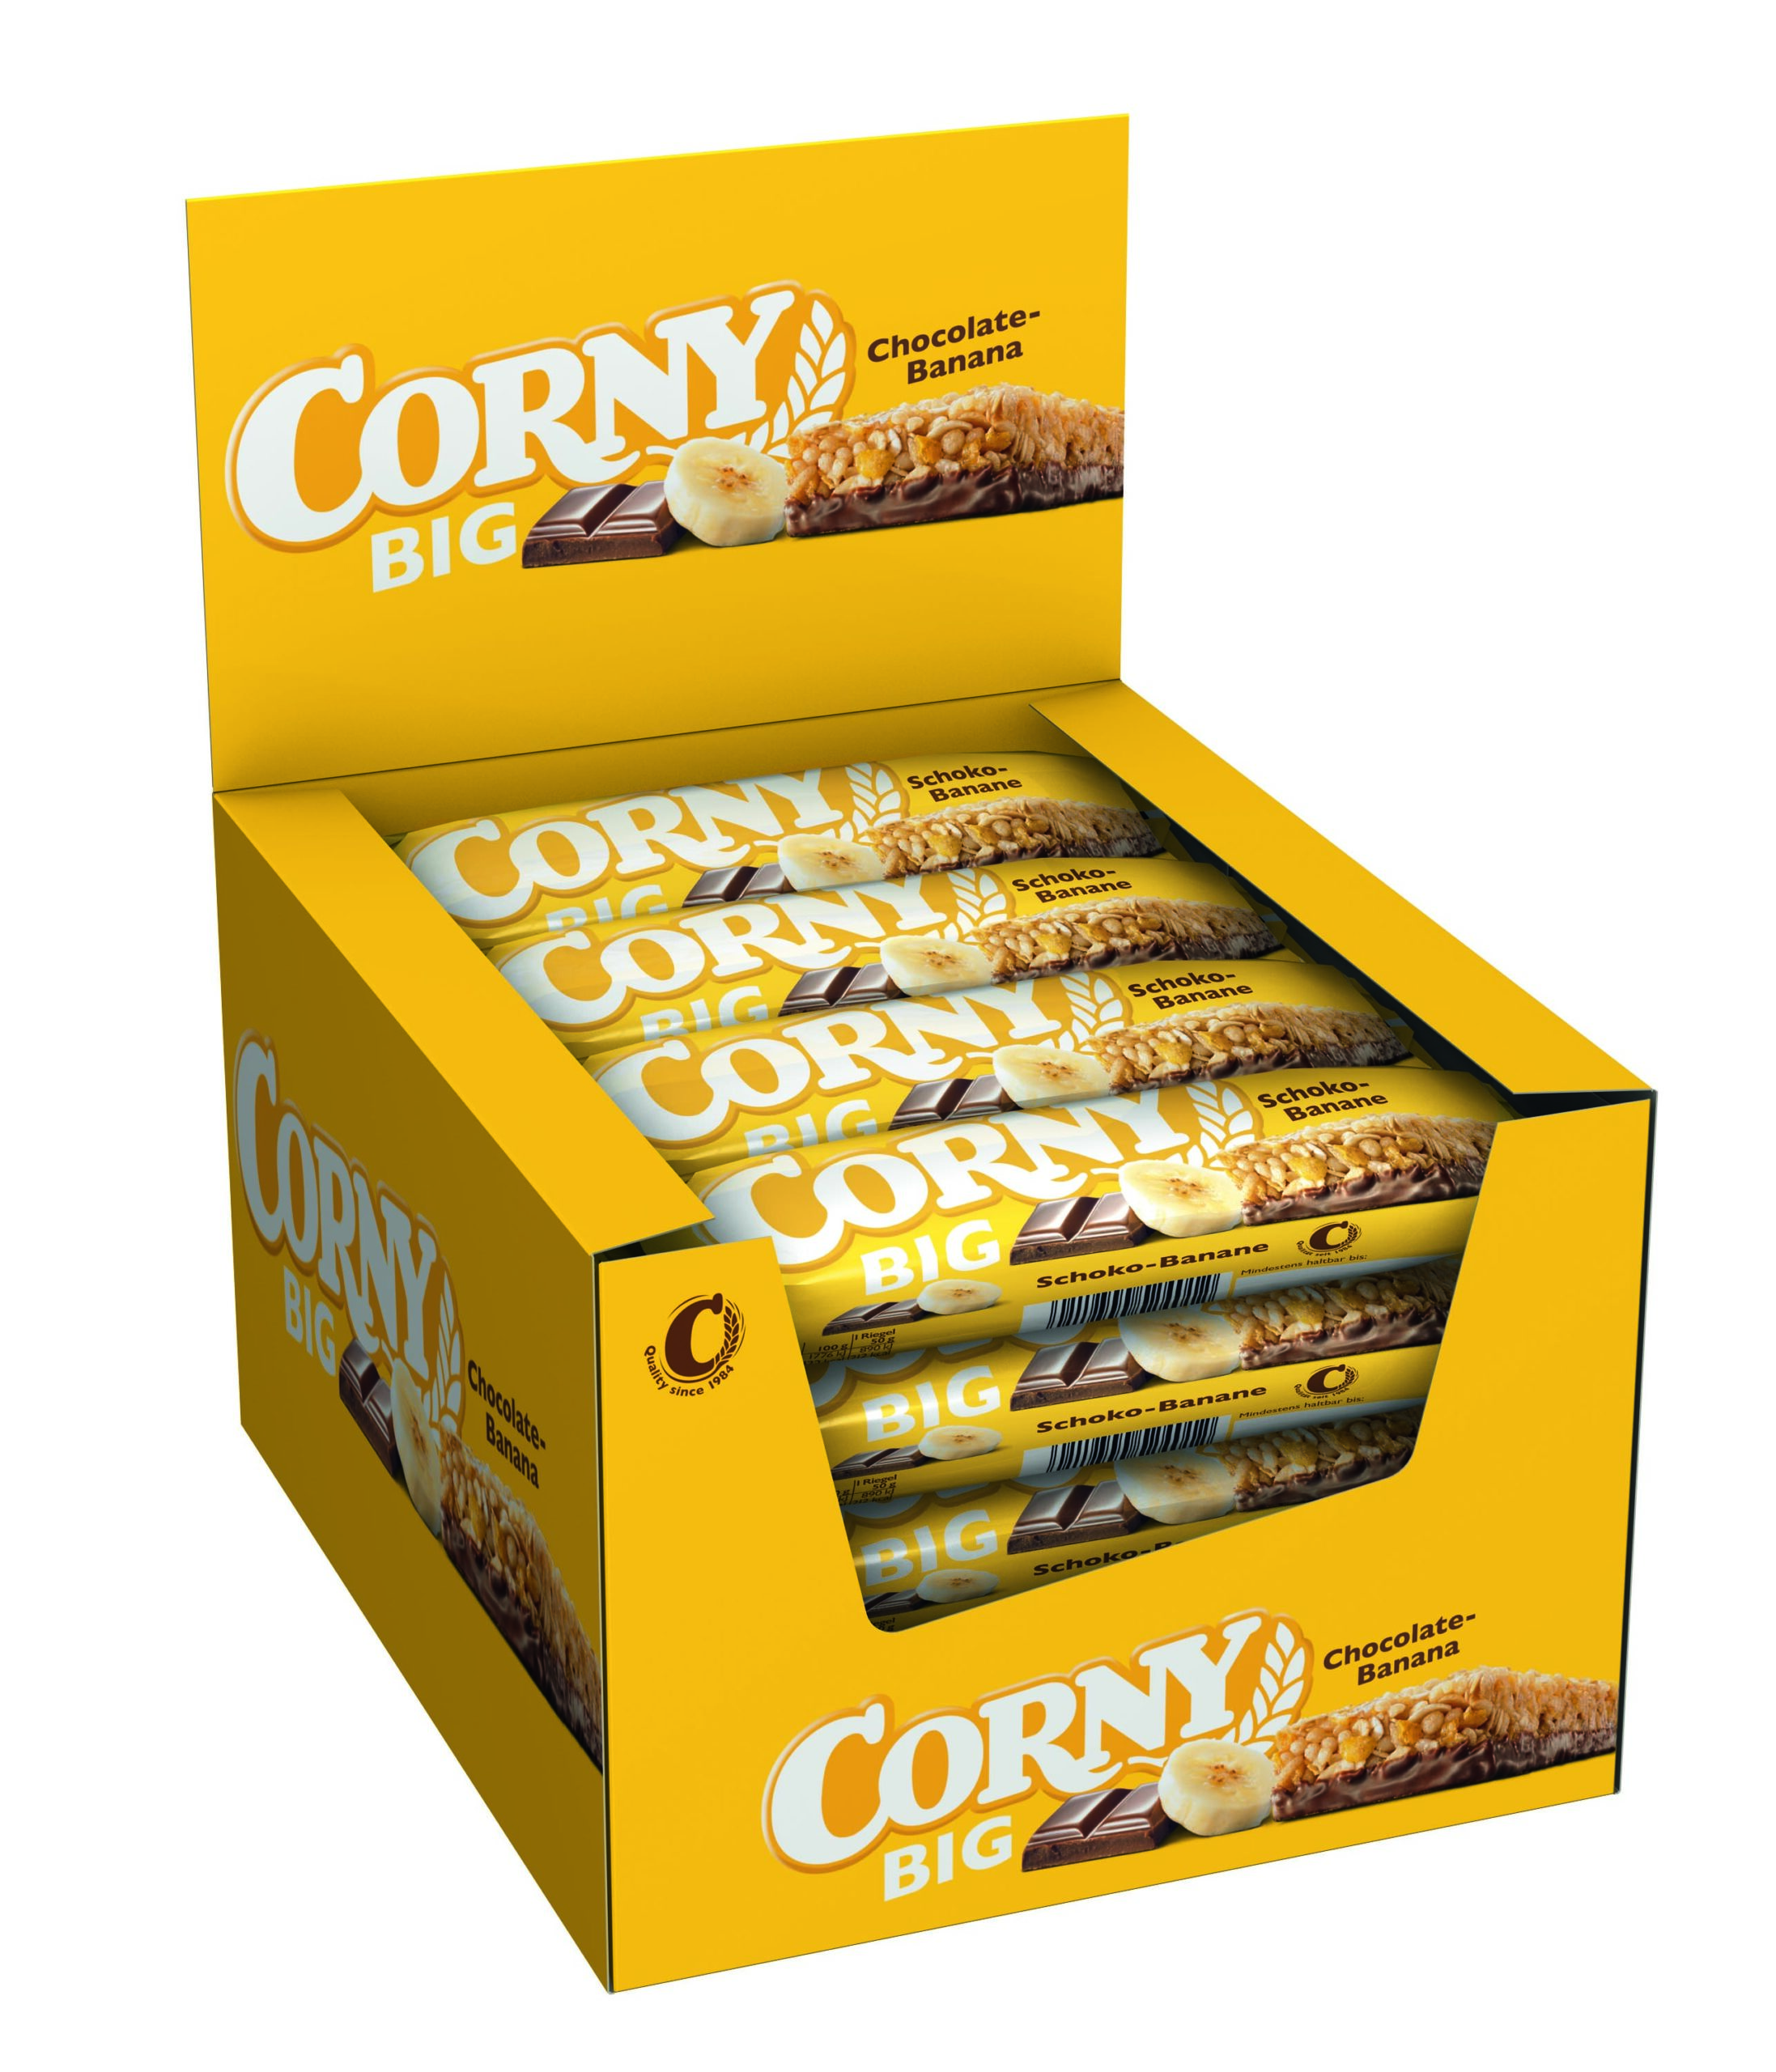 Corny Big Banane-Schoko 24x50g Packung